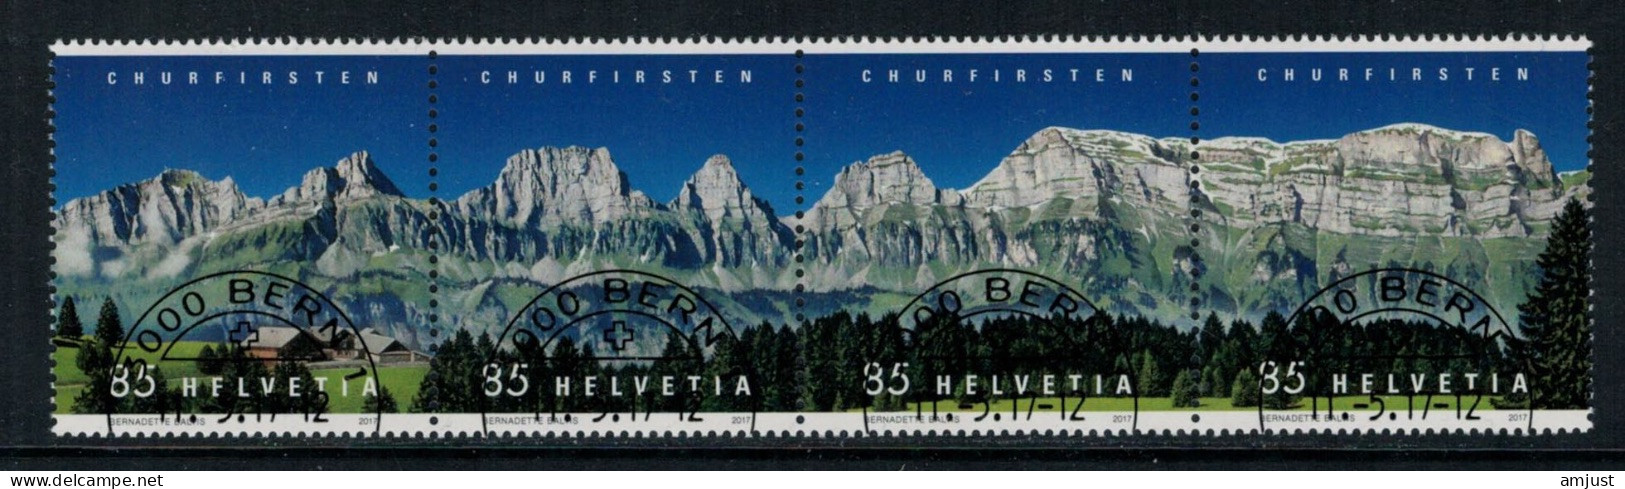 Suisse /Schweiz/Svizzera/Switzerland // 2017 // Churfirsten  Oblitéré No. 1631-1634 - Used Stamps